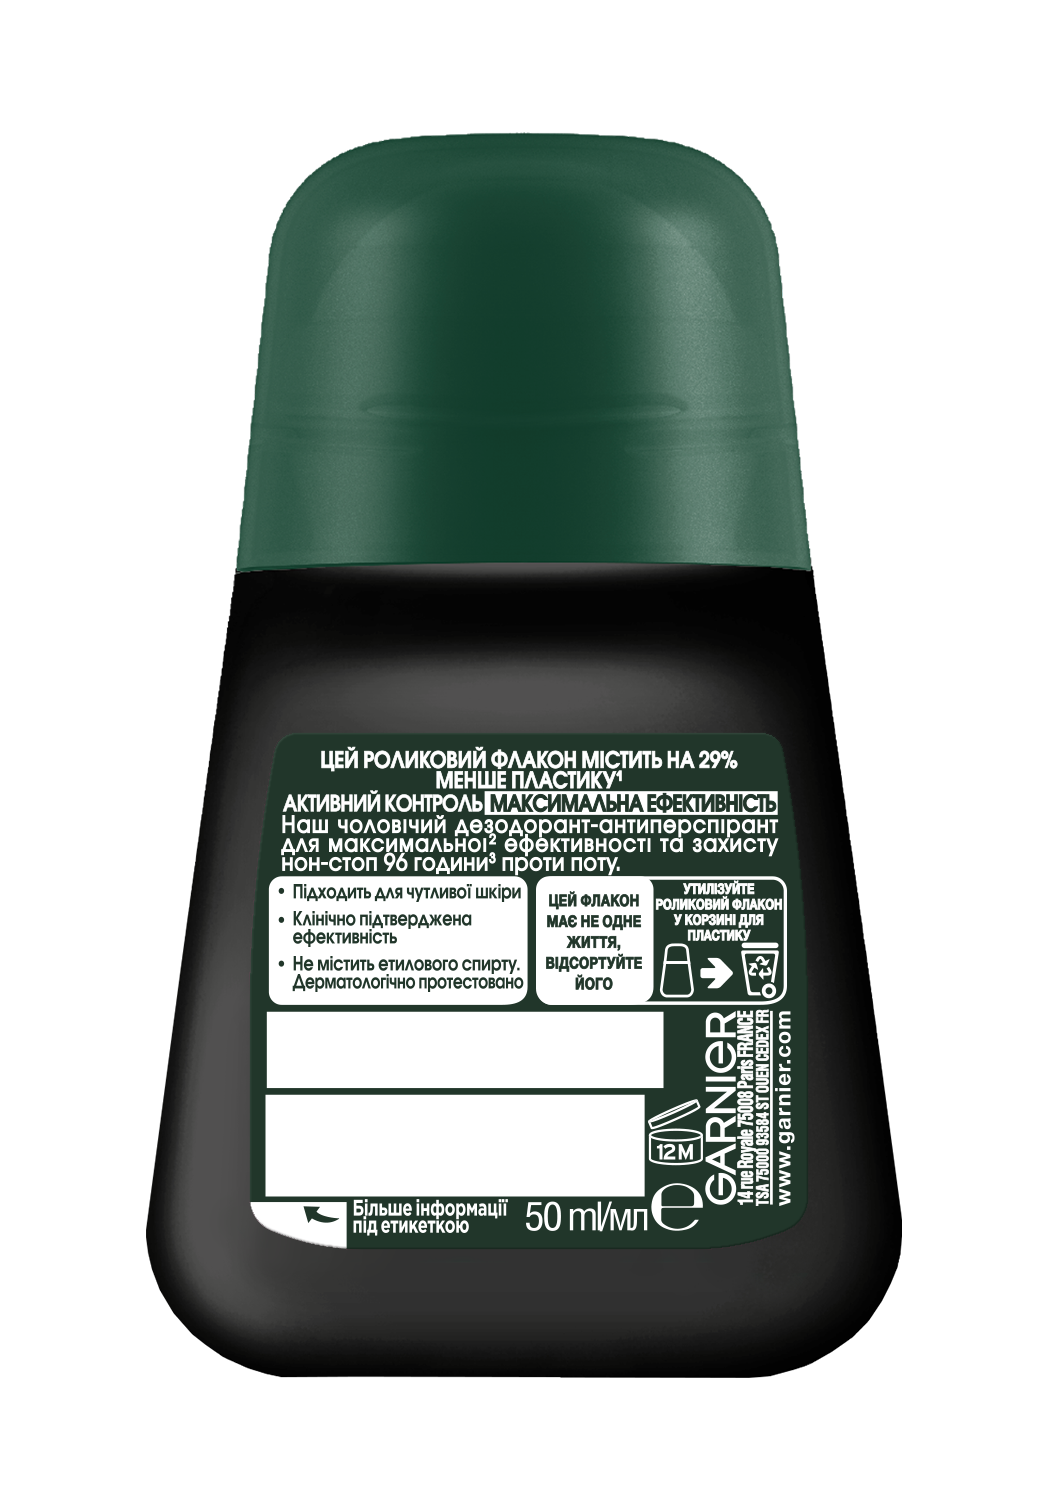 Дезодорант-антиперспирант Garnier Mineral Активный контроль и максимальная эффективность, шариковый, 50 мл - фото 2